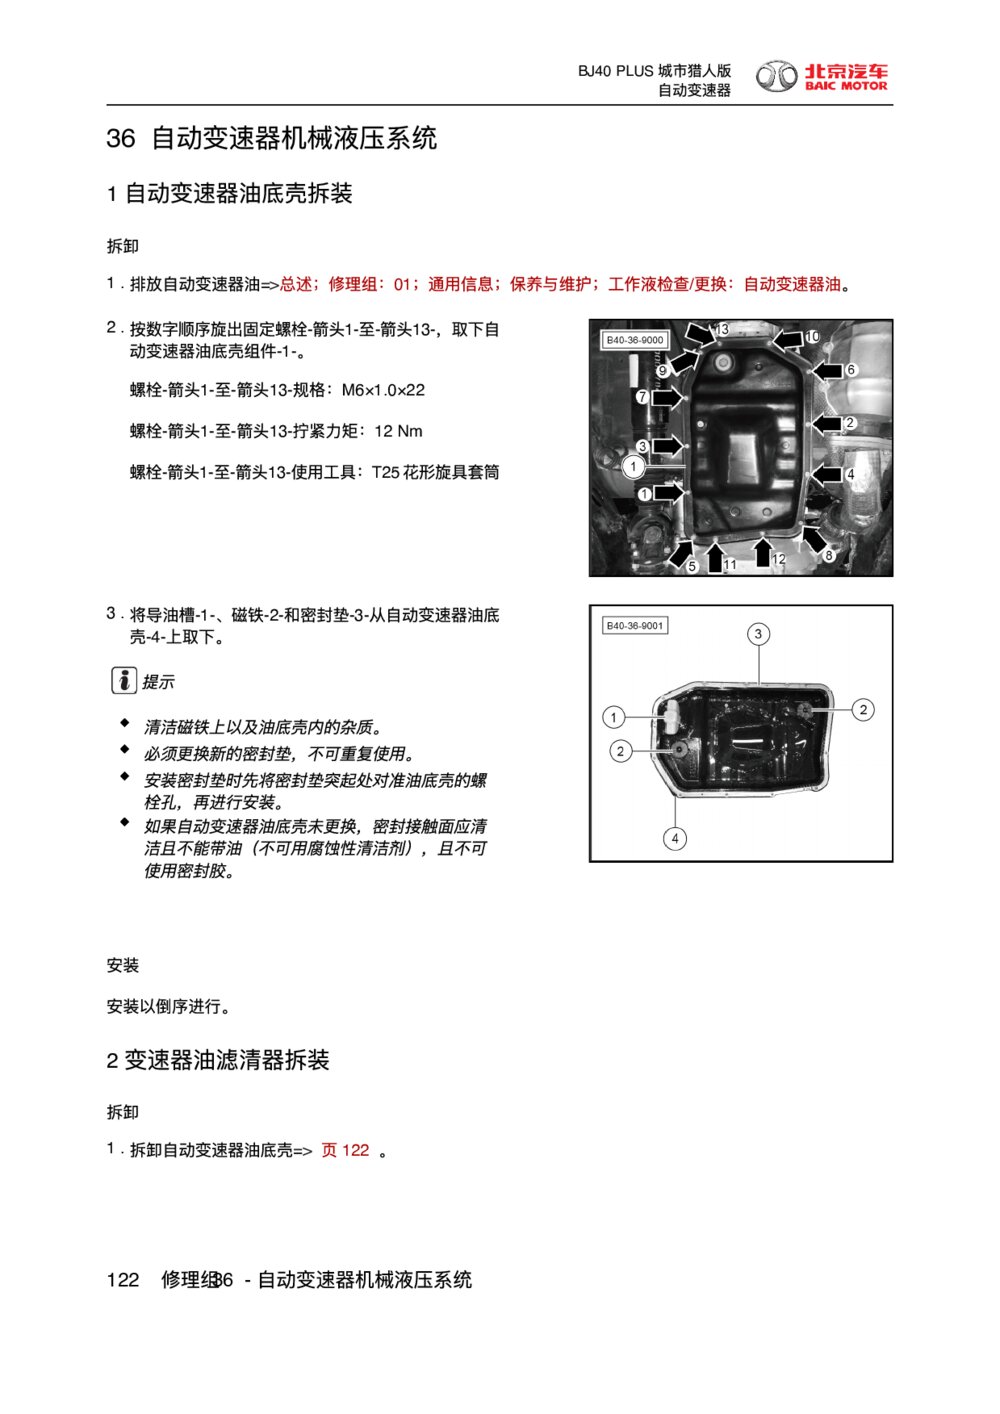 2018款北京BJ40 PLUS自动变速器机械液压系统维修手册1